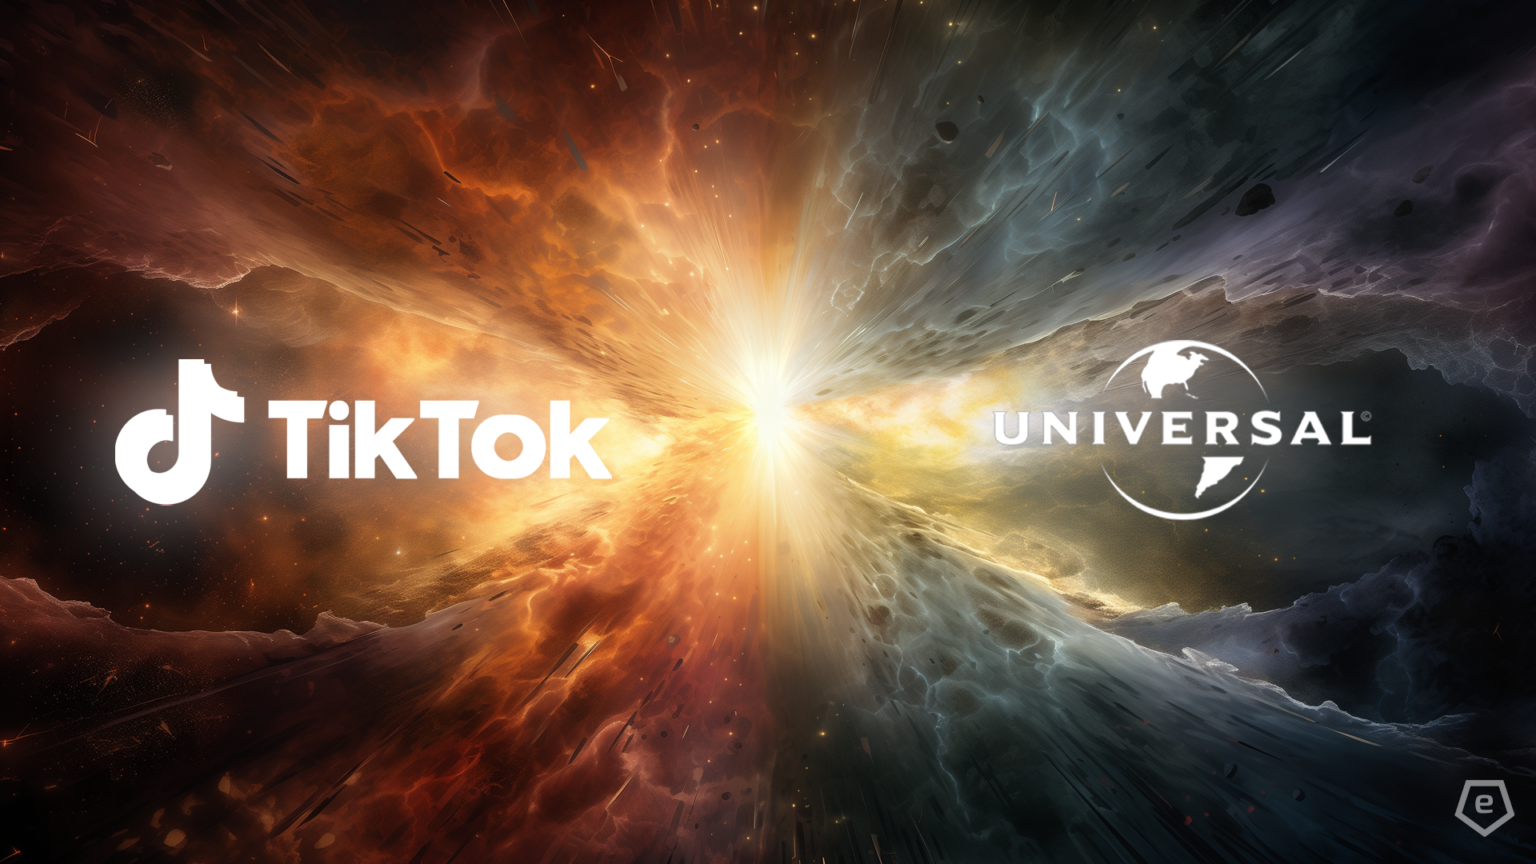 Erfahre mehr über den Konflikt zwischen Universal Music und TikTok und seine Bedeutung für die Musik- und Medienwelt.